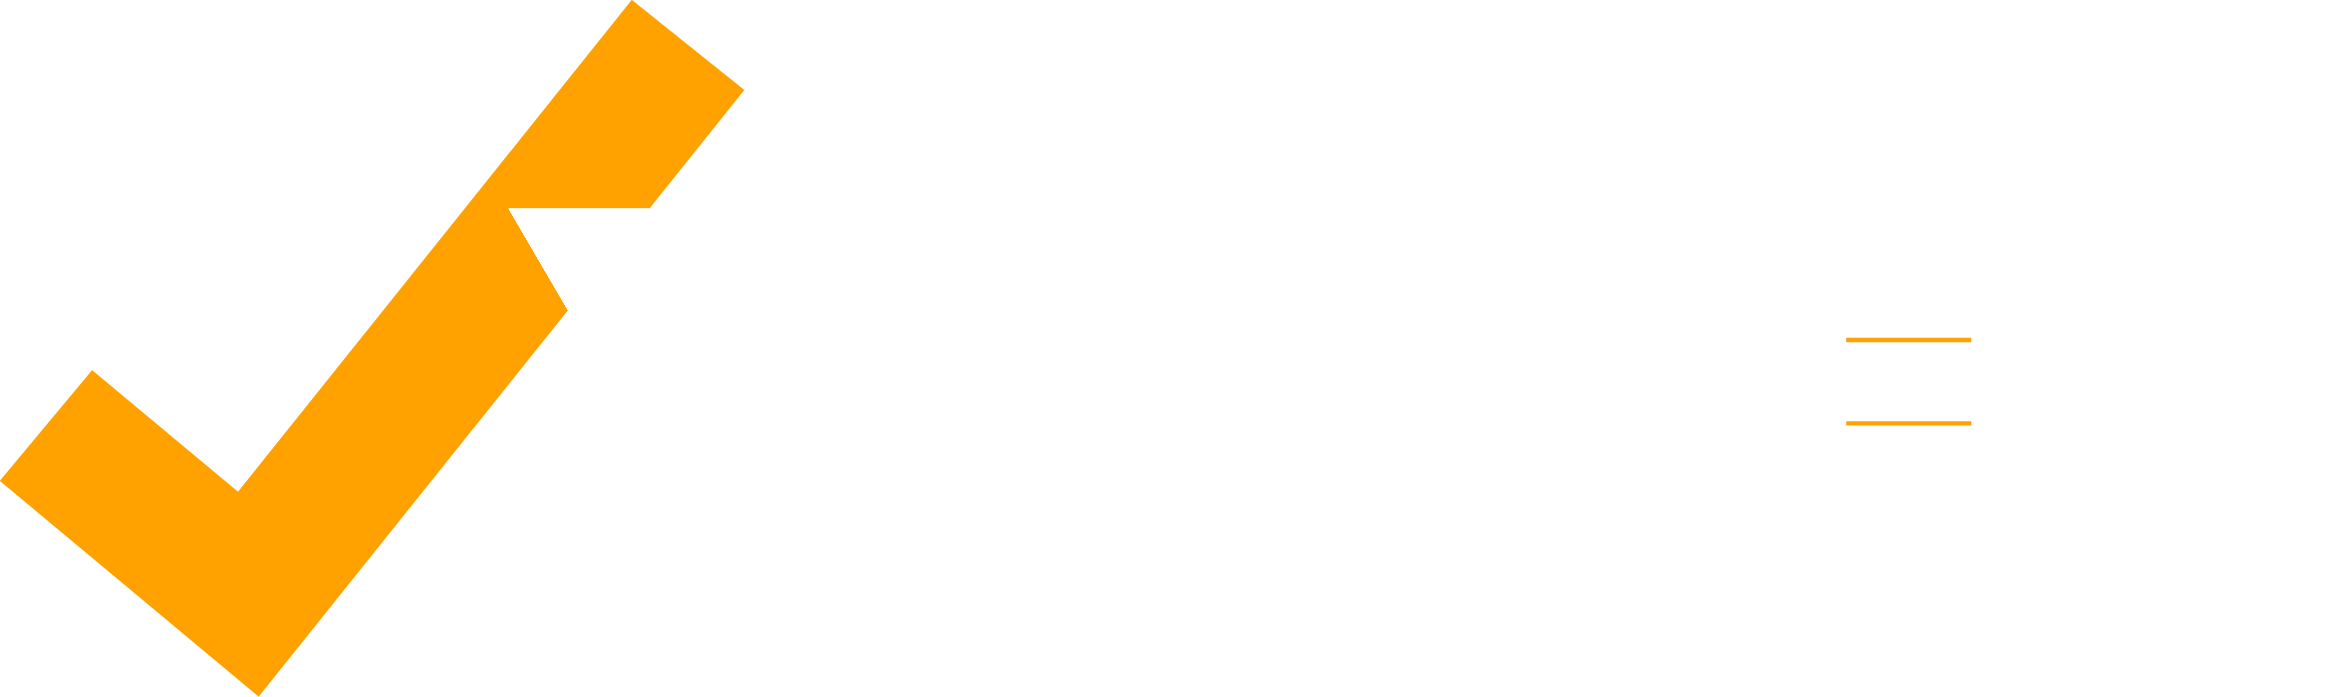 Massachusetts Logo - Yes on 3: Freedom for All Massachusetts